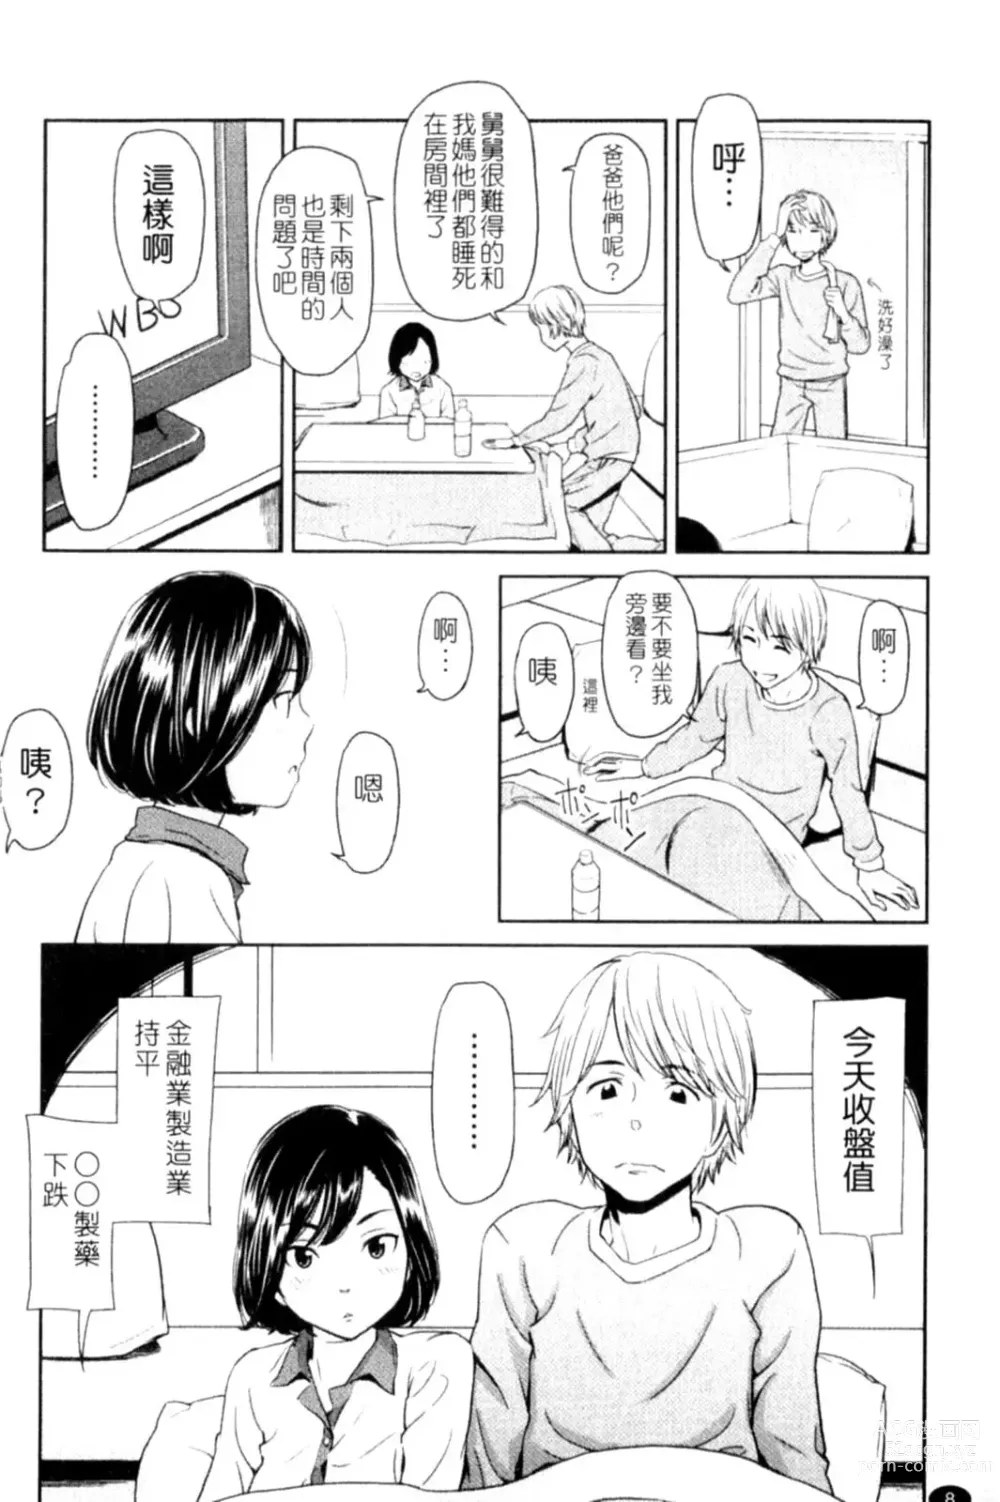 Page 8 of manga Porno Graffitti